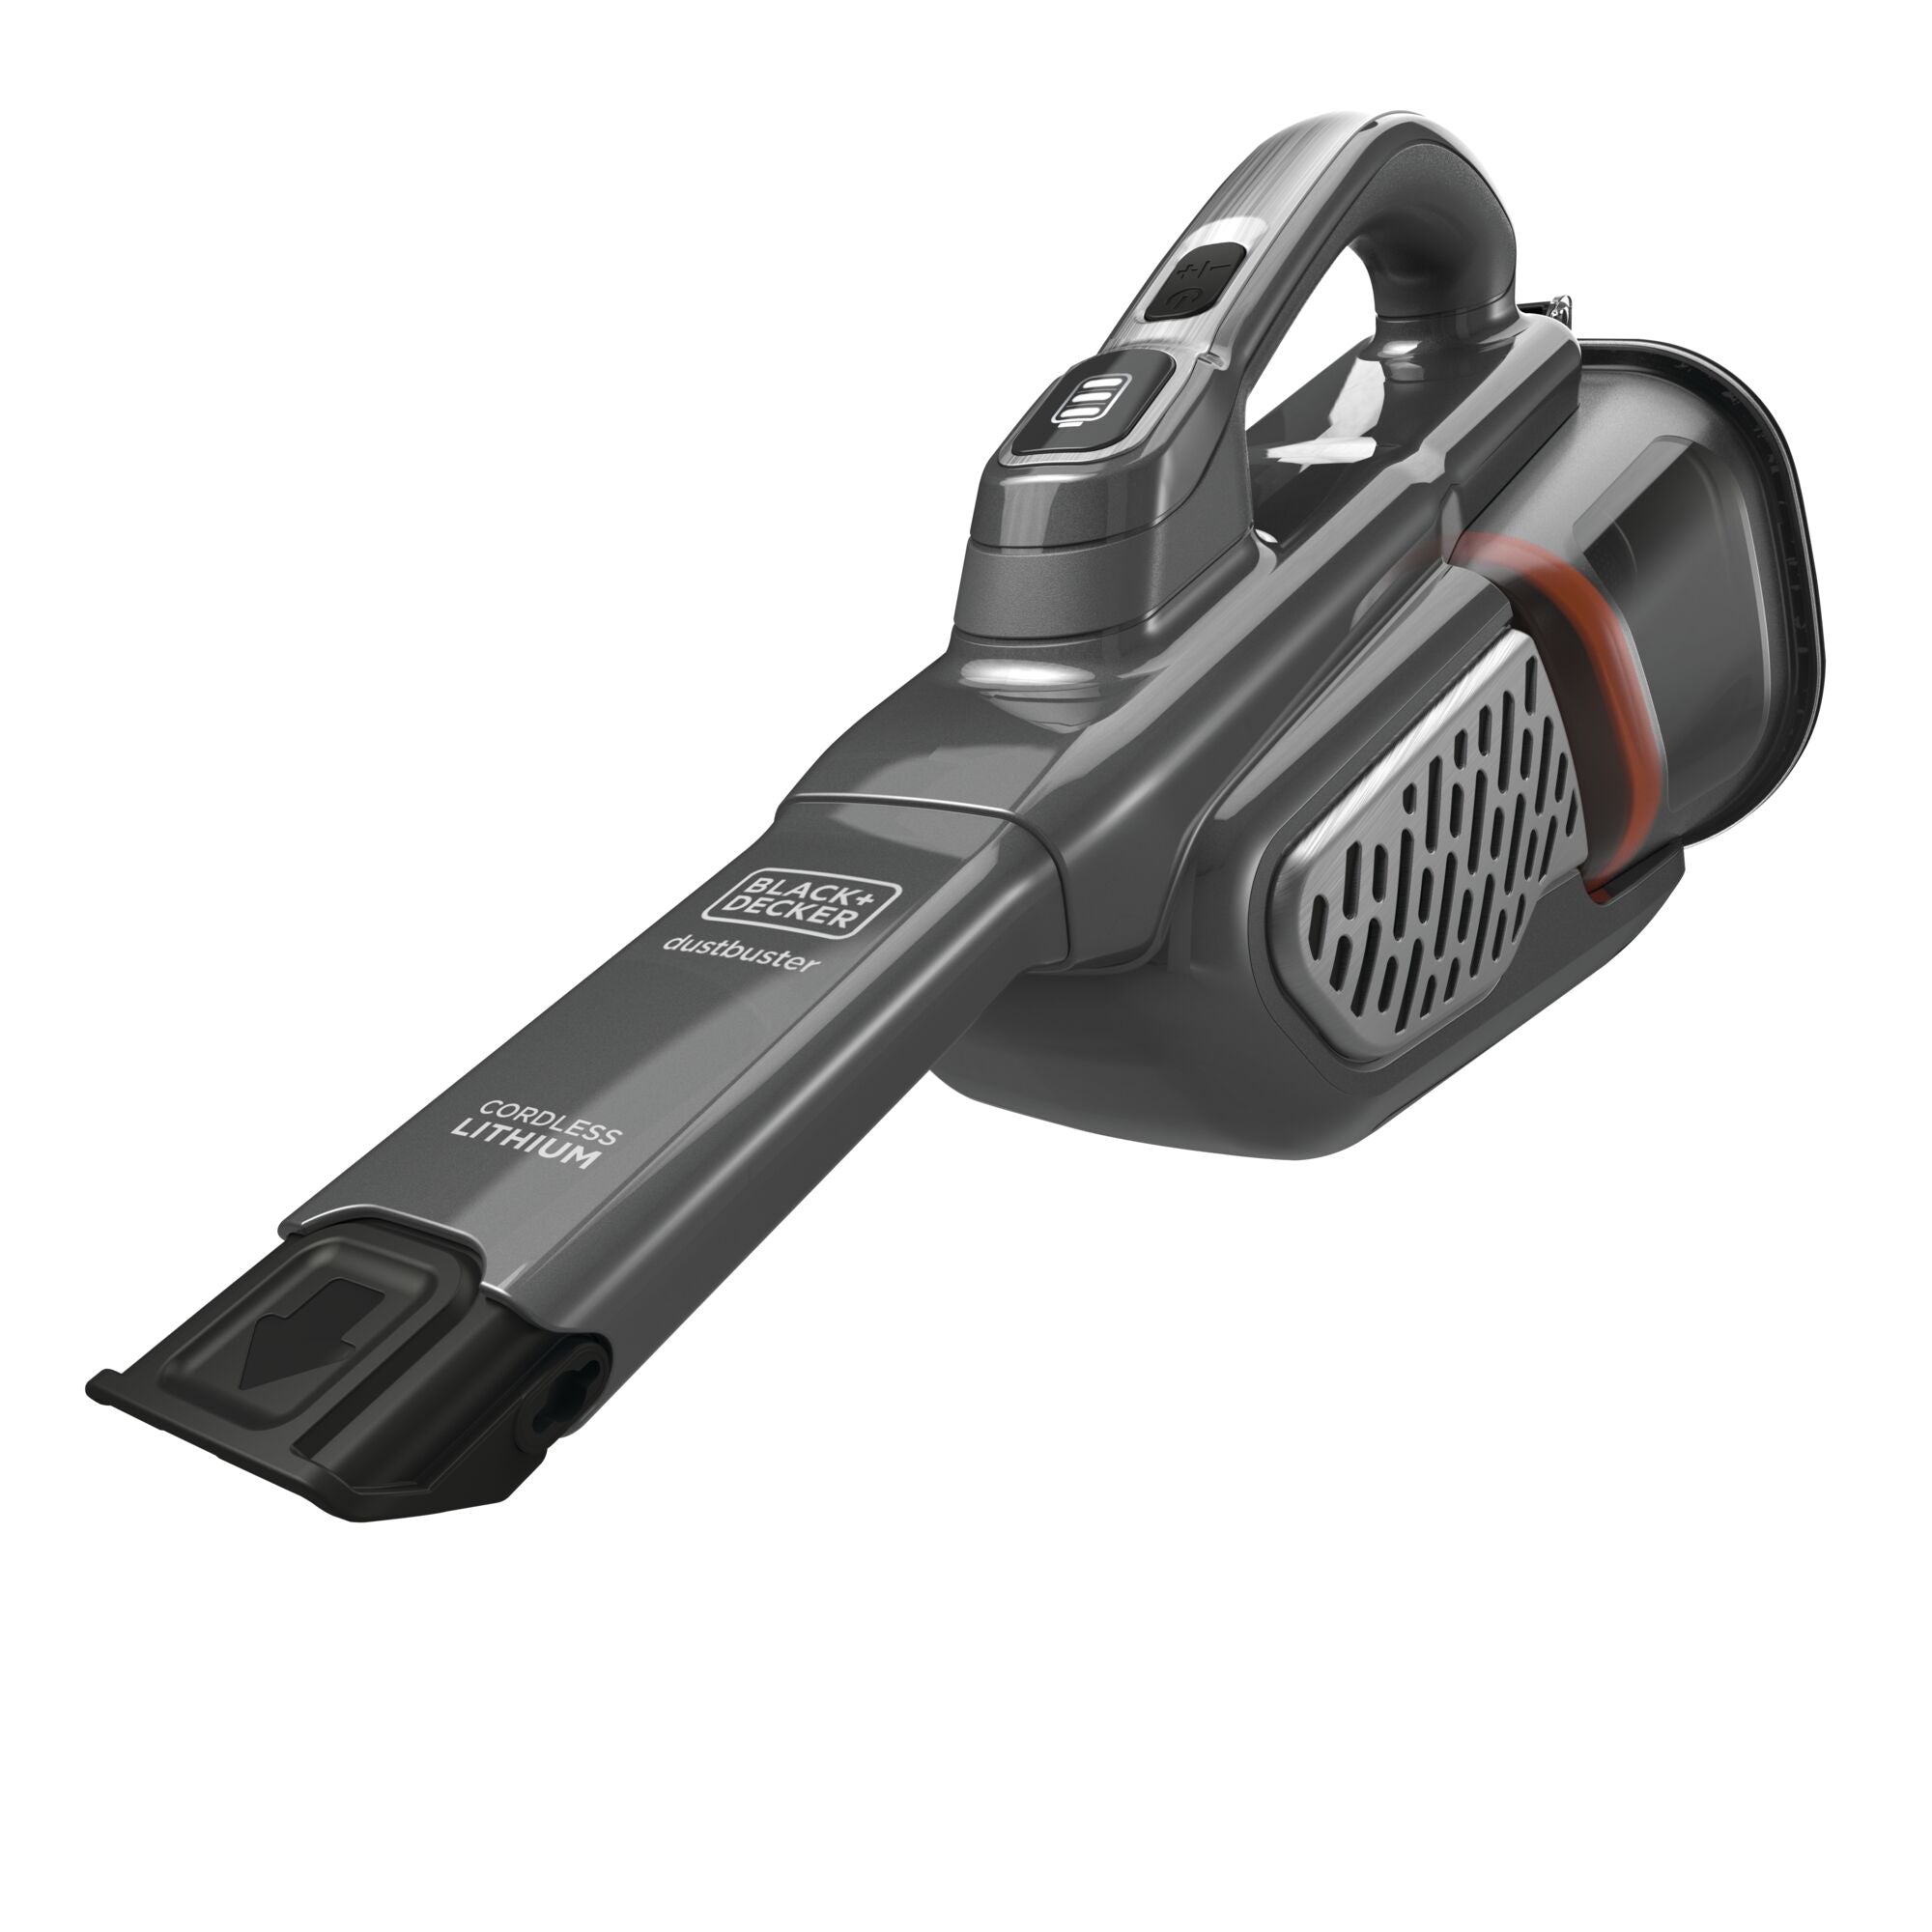 Black + Decker 16V MAX Dustbuster Advancedclean+ Hand Vacuum